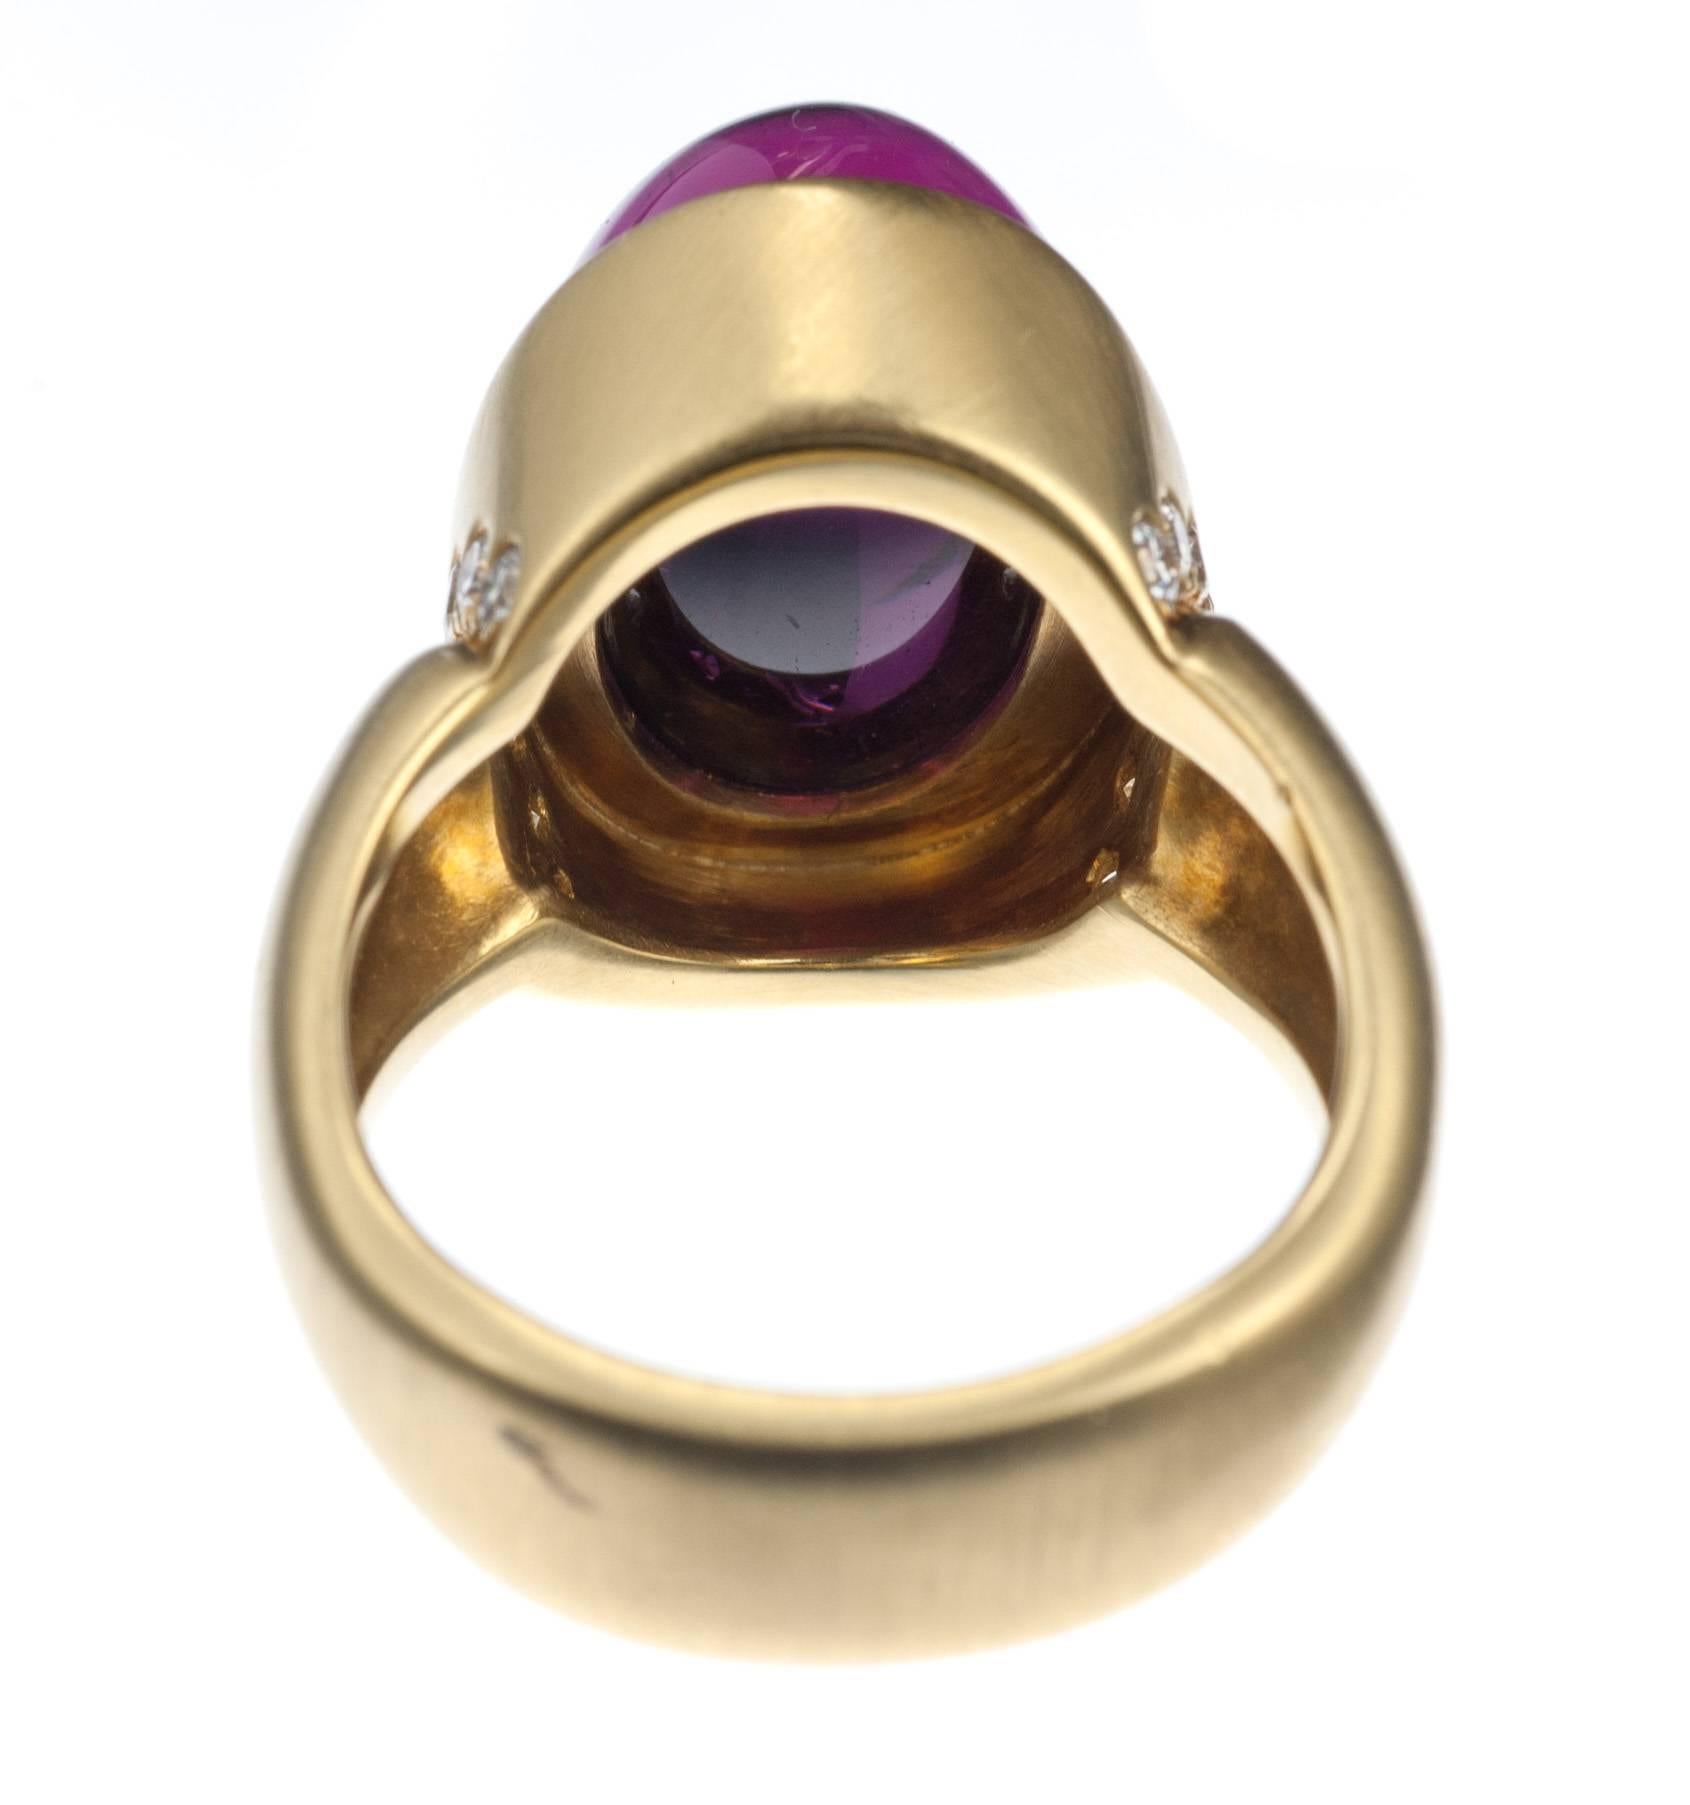 Susan Sadler Rhodolite Garnet and Diamond Ring in 18 Karat Yellow Gold 1